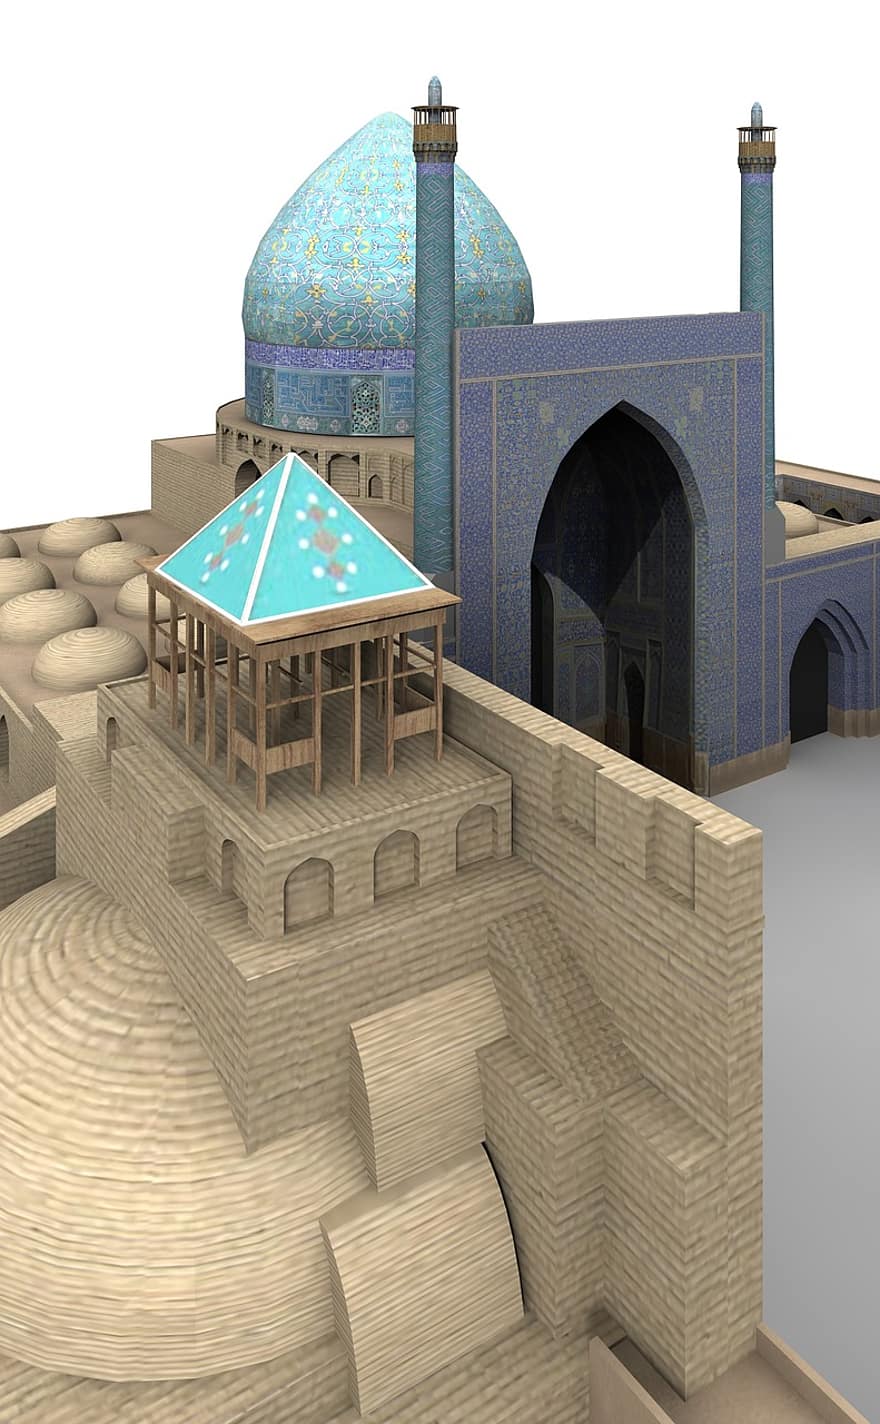 Koning Moskee, Isfahan, ik rende, gebouw, interessante plaatsen, historisch, toeristen, aantrekkelijkheid, mijlpaal, facade, reizen